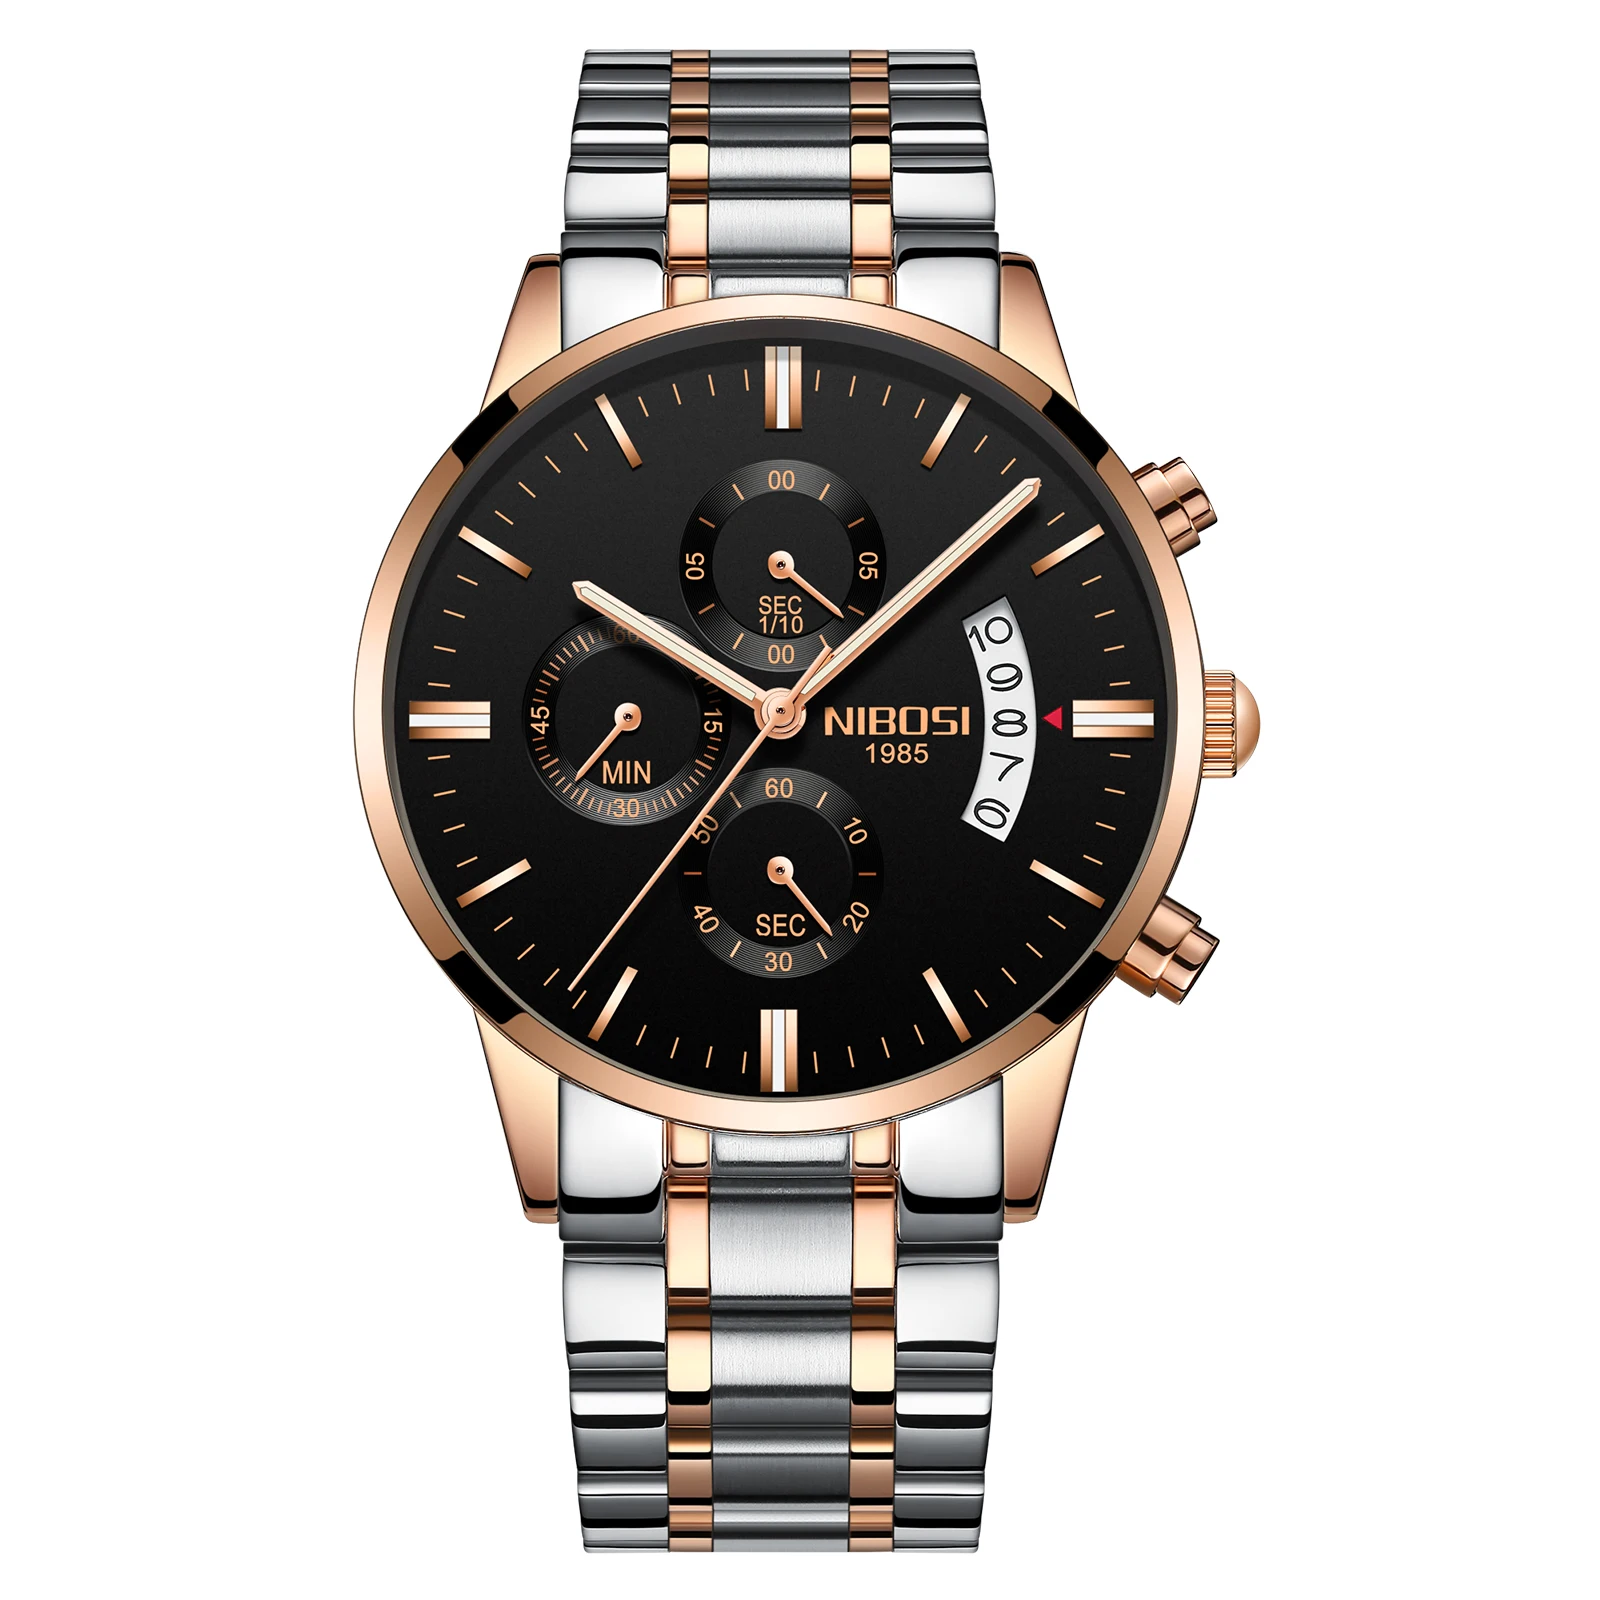 2018 NIBOSI золотые кварцевые часы лучший бренд роскошных Для мужчин часы моды человек Наручные часы Нержавеющая сталь Relogio Masculino Saatler